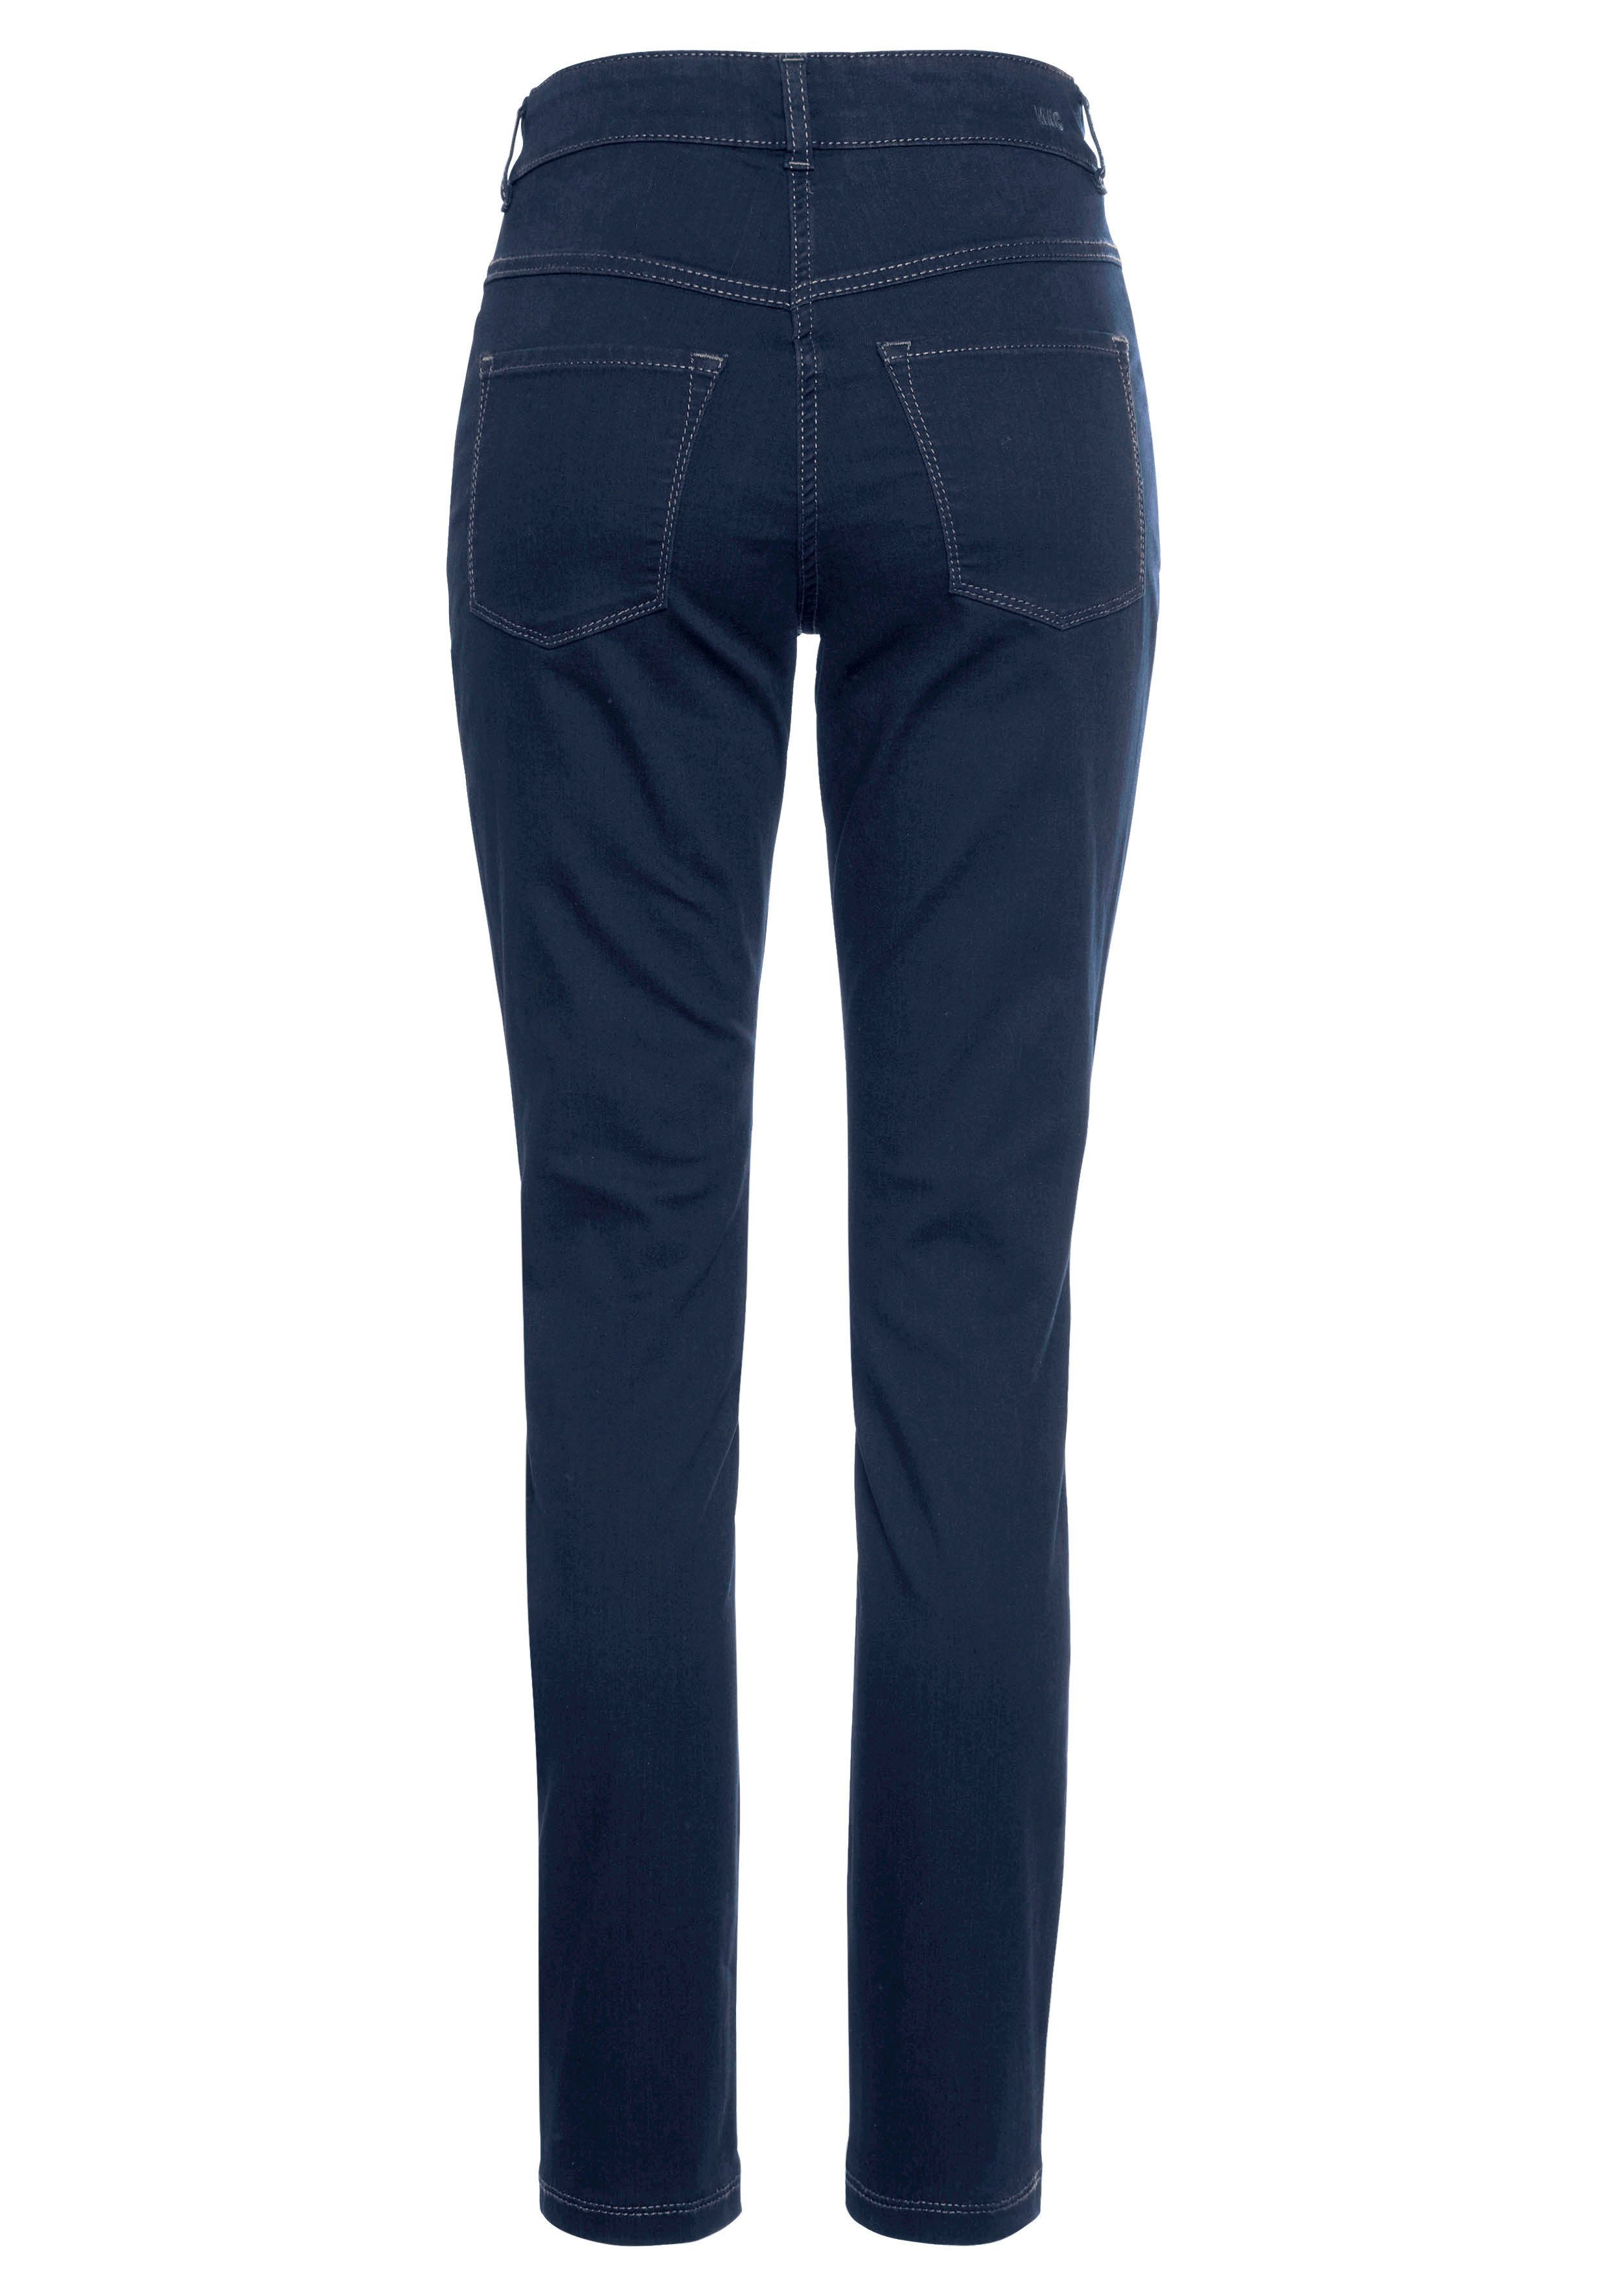 MAC Skinny-fit-Jeans Hiperstretch-Skinny Power-Stretch sitzt den Tag Qualität dark blue ganzen new wash basic bequem